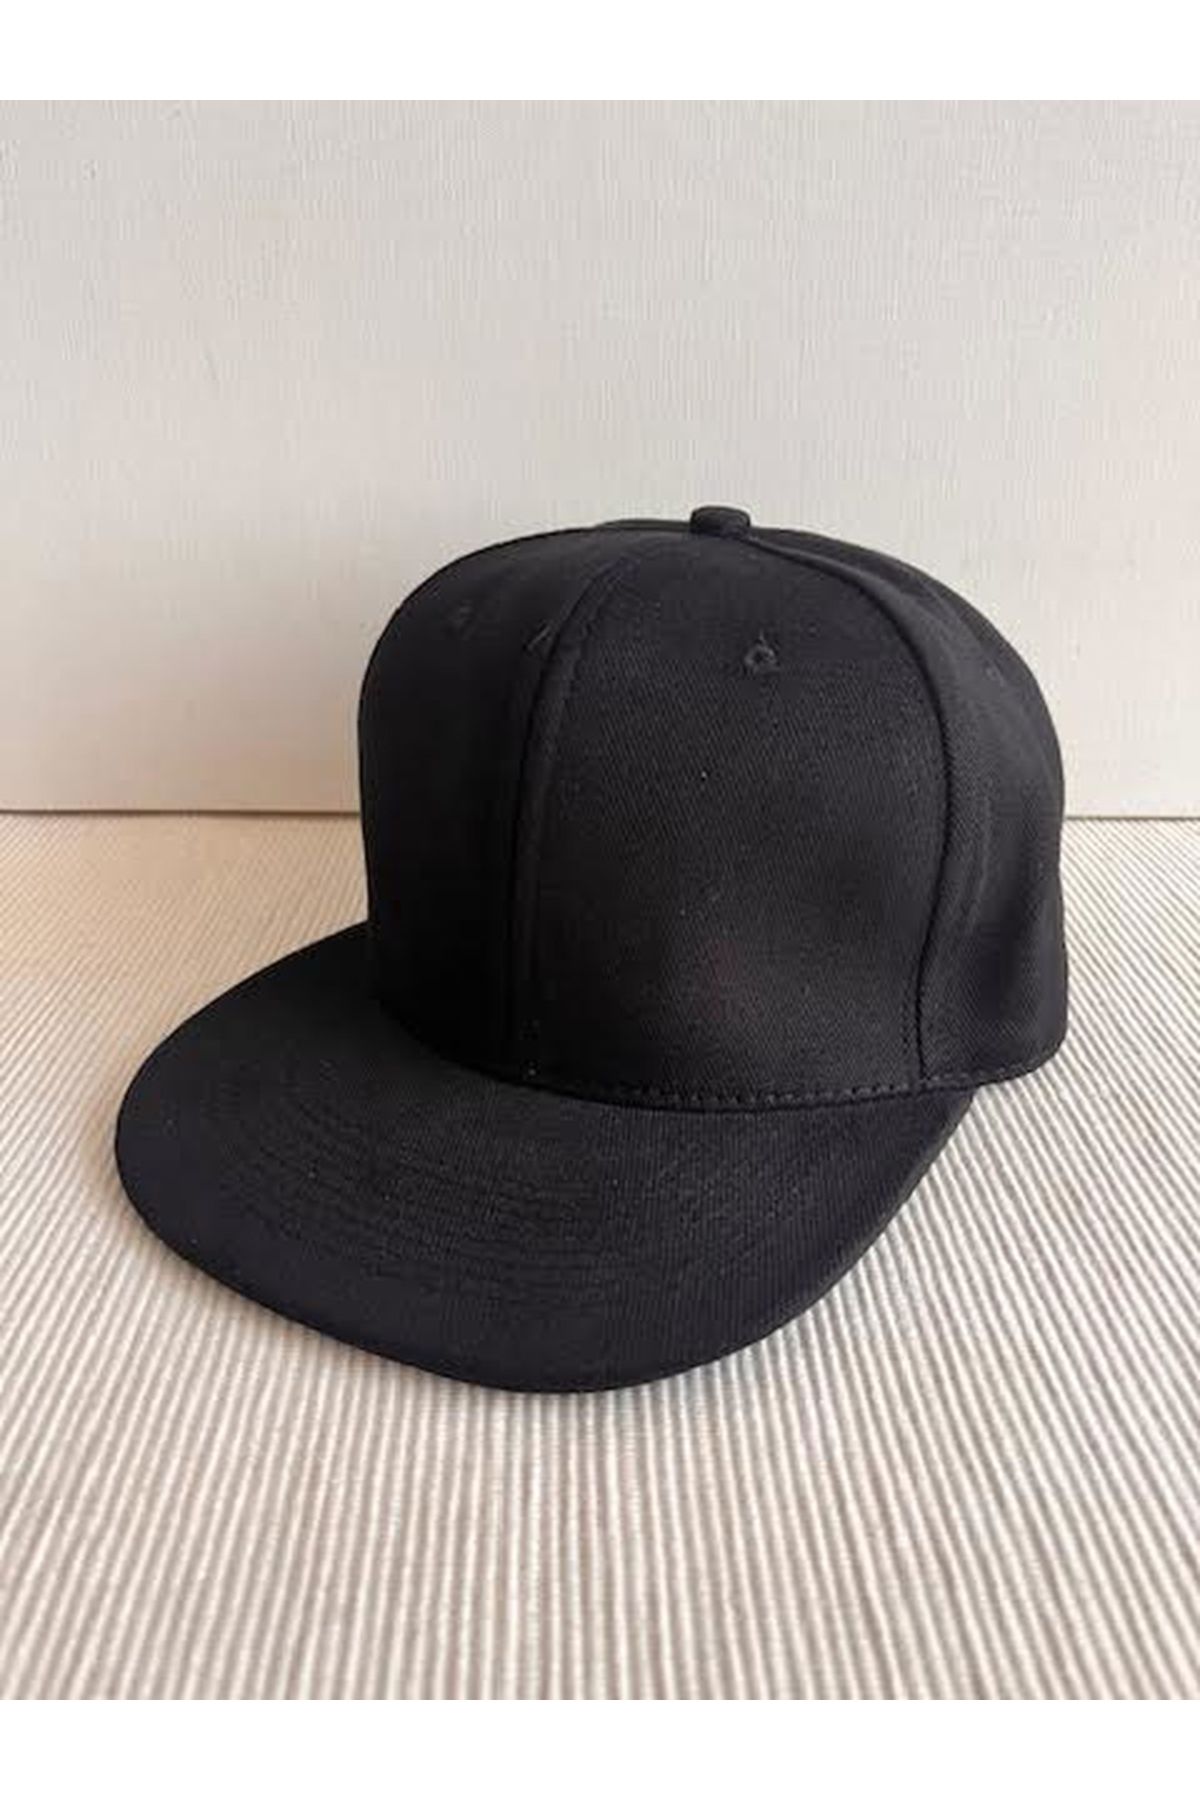 CosmoOutlet Düz Renk Basic Arkasından Ayarlanabilir Unisex Siyah Renk Hip Hop Şapka